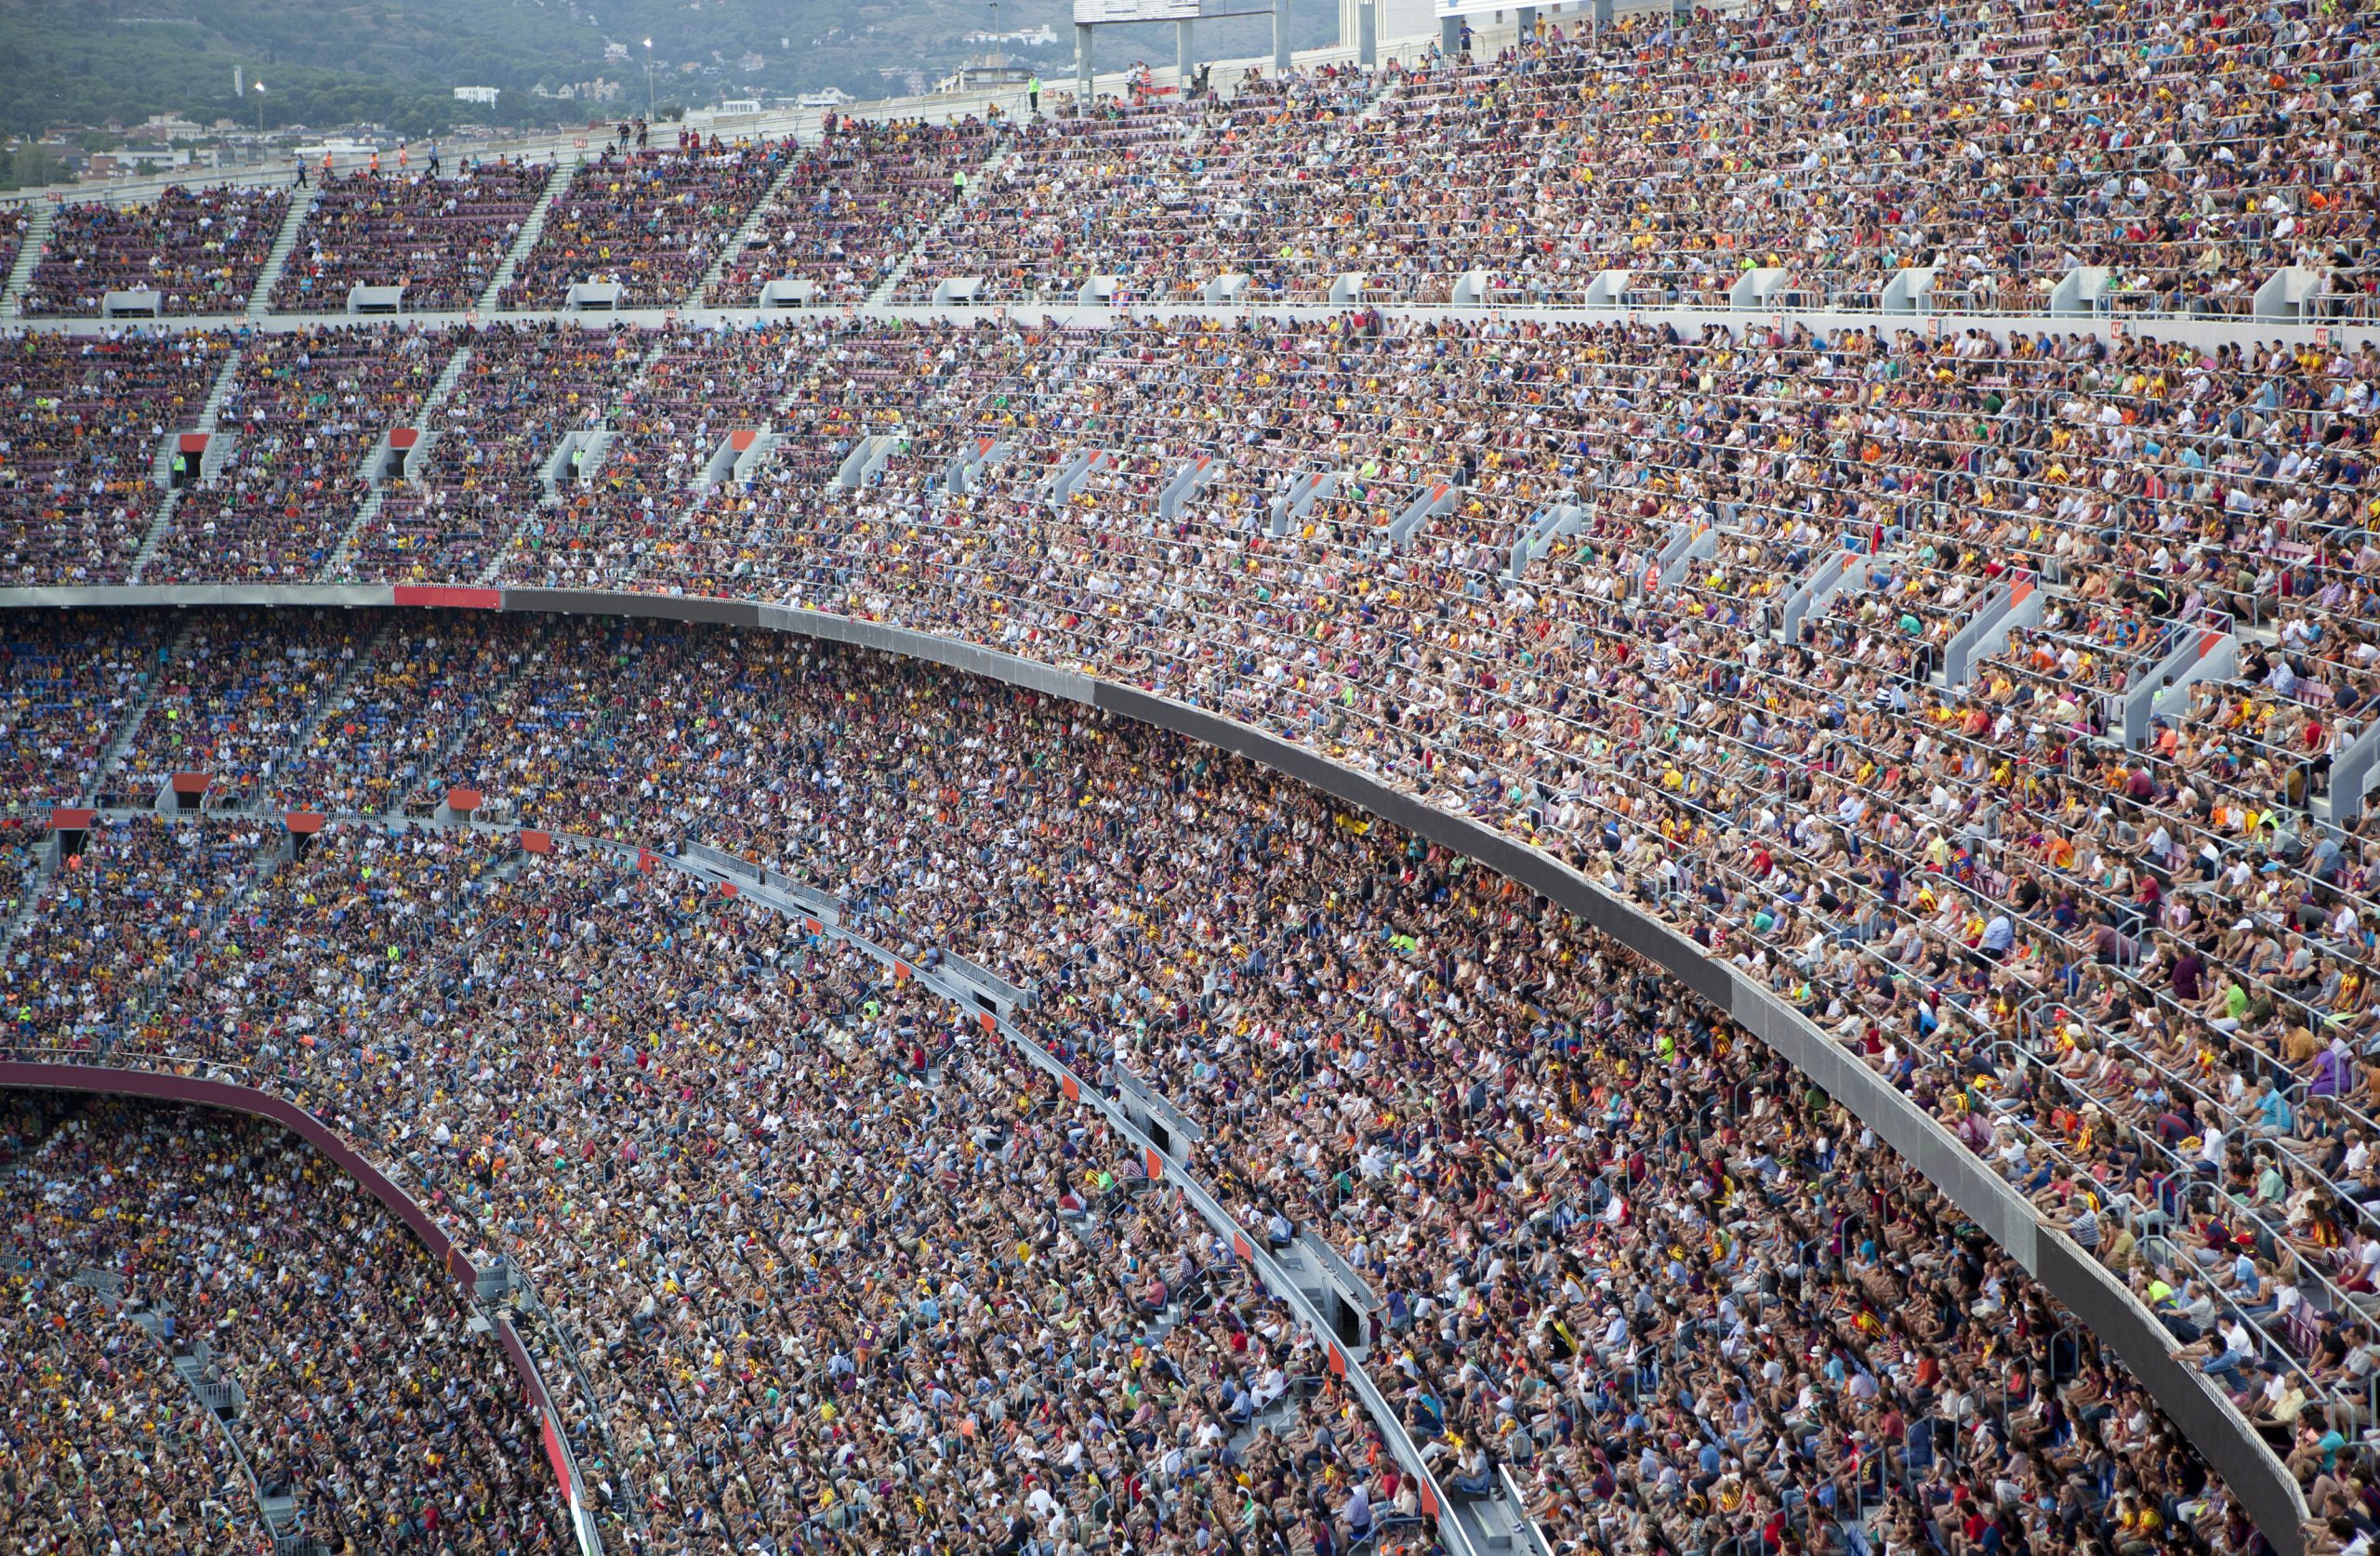 Stadium full of spectators